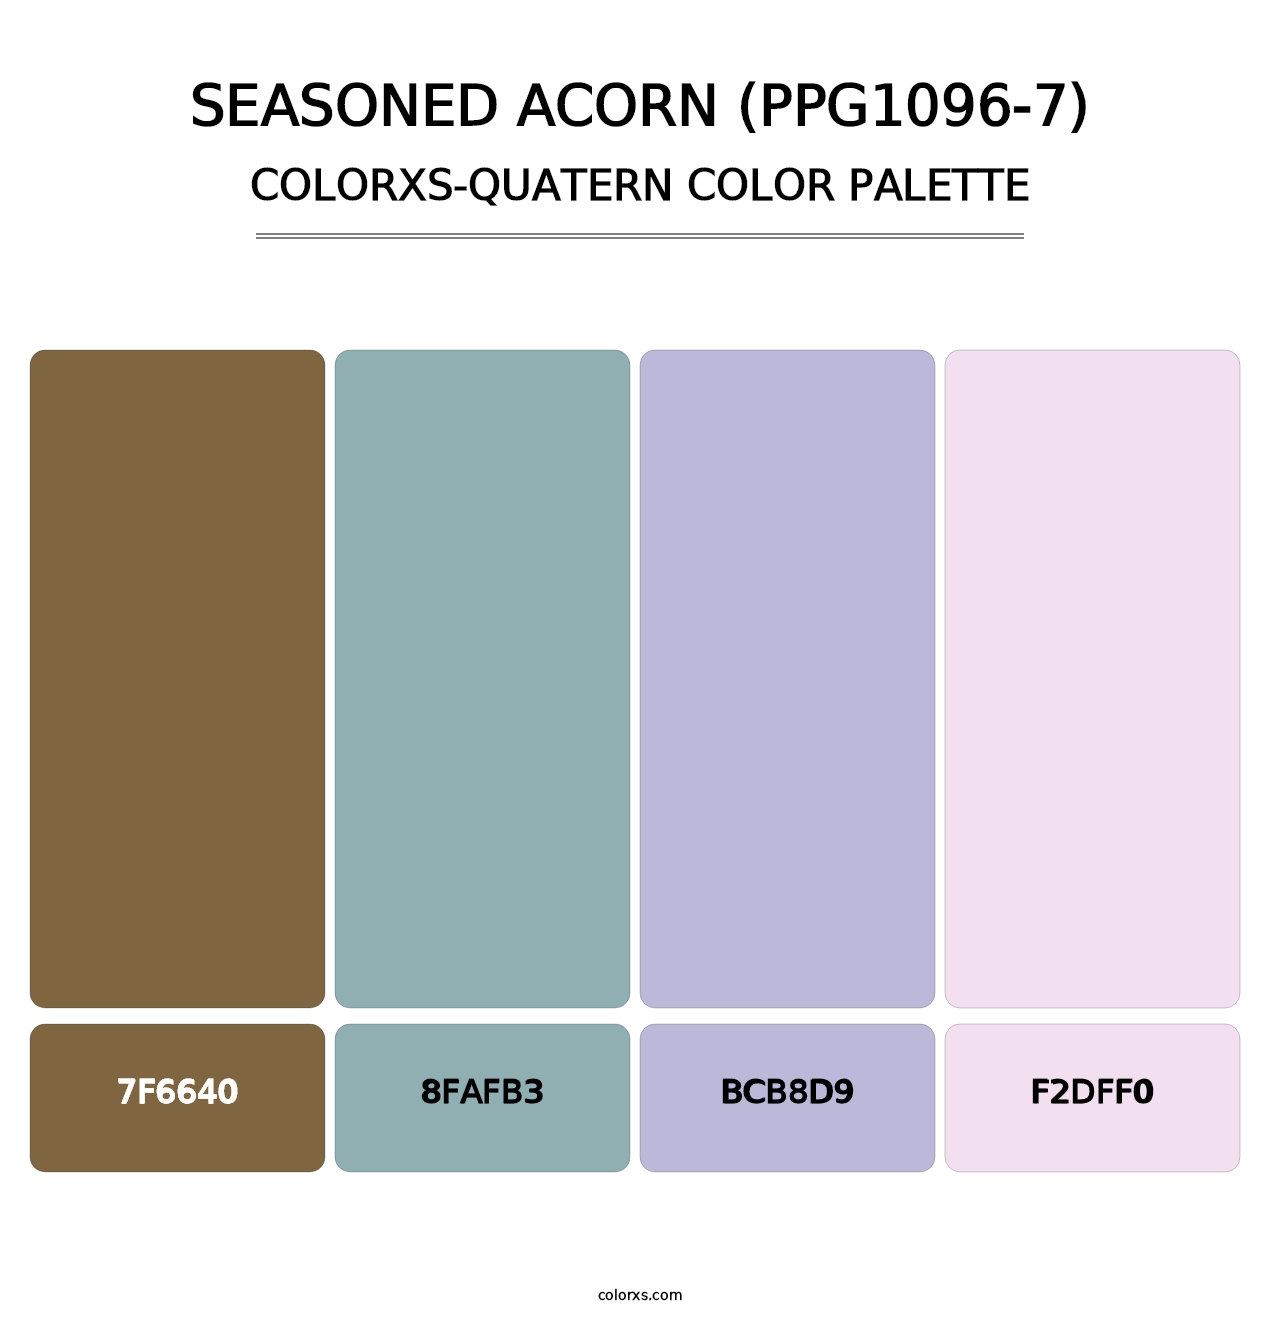 Seasoned Acorn (PPG1096-7) - Colorxs Quatern Palette